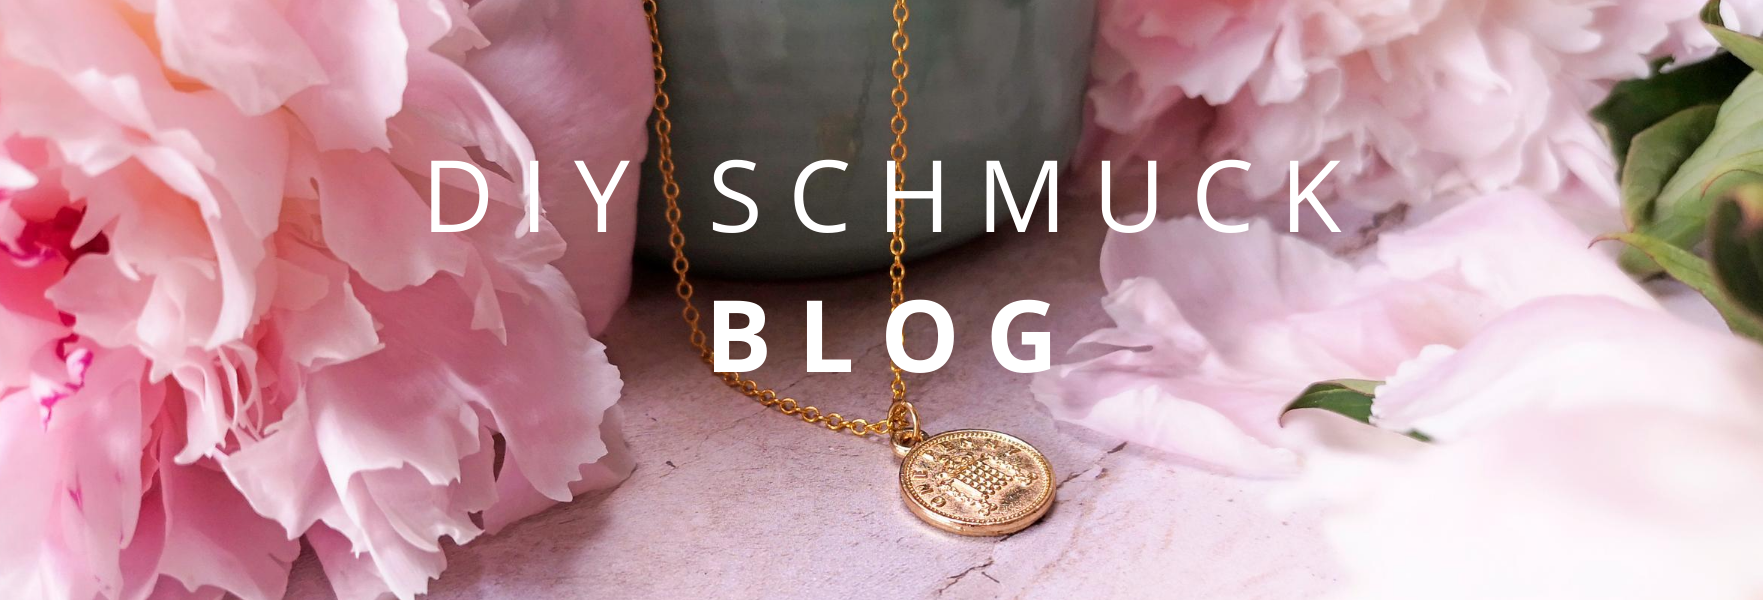 Bild mit rosa Blumen und einer Kette mit Münze als Anhänger in der mitte. Auf dem Bild steht DIY Schmuck Blog geschrieben